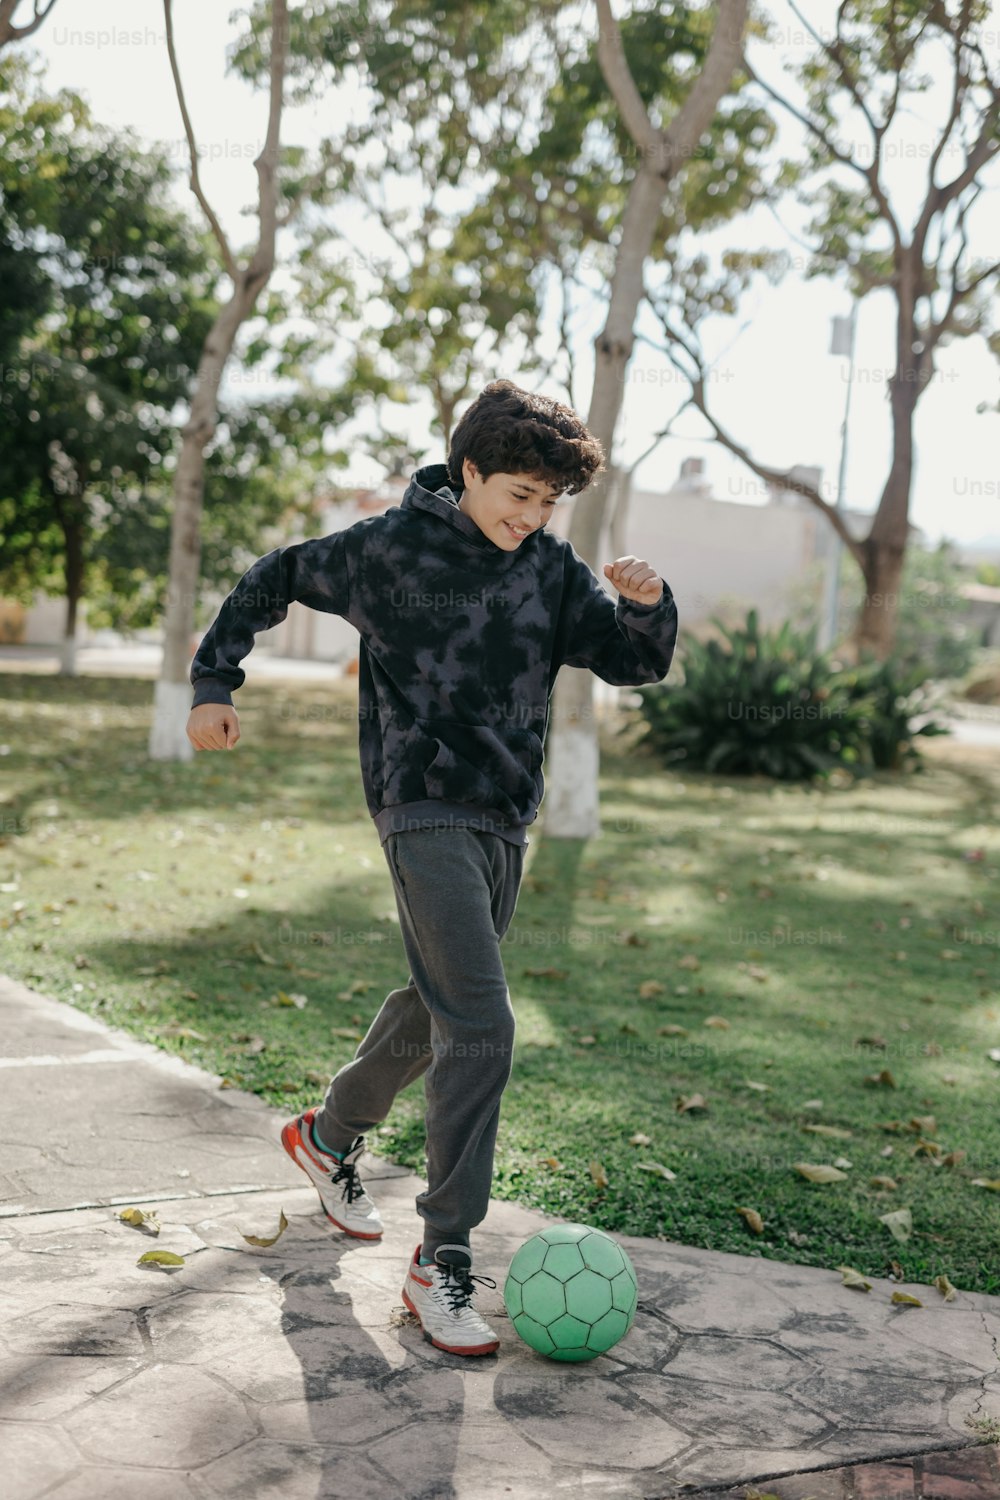 Ein kleiner Junge kickt einen Fußball auf einem Bürgersteig